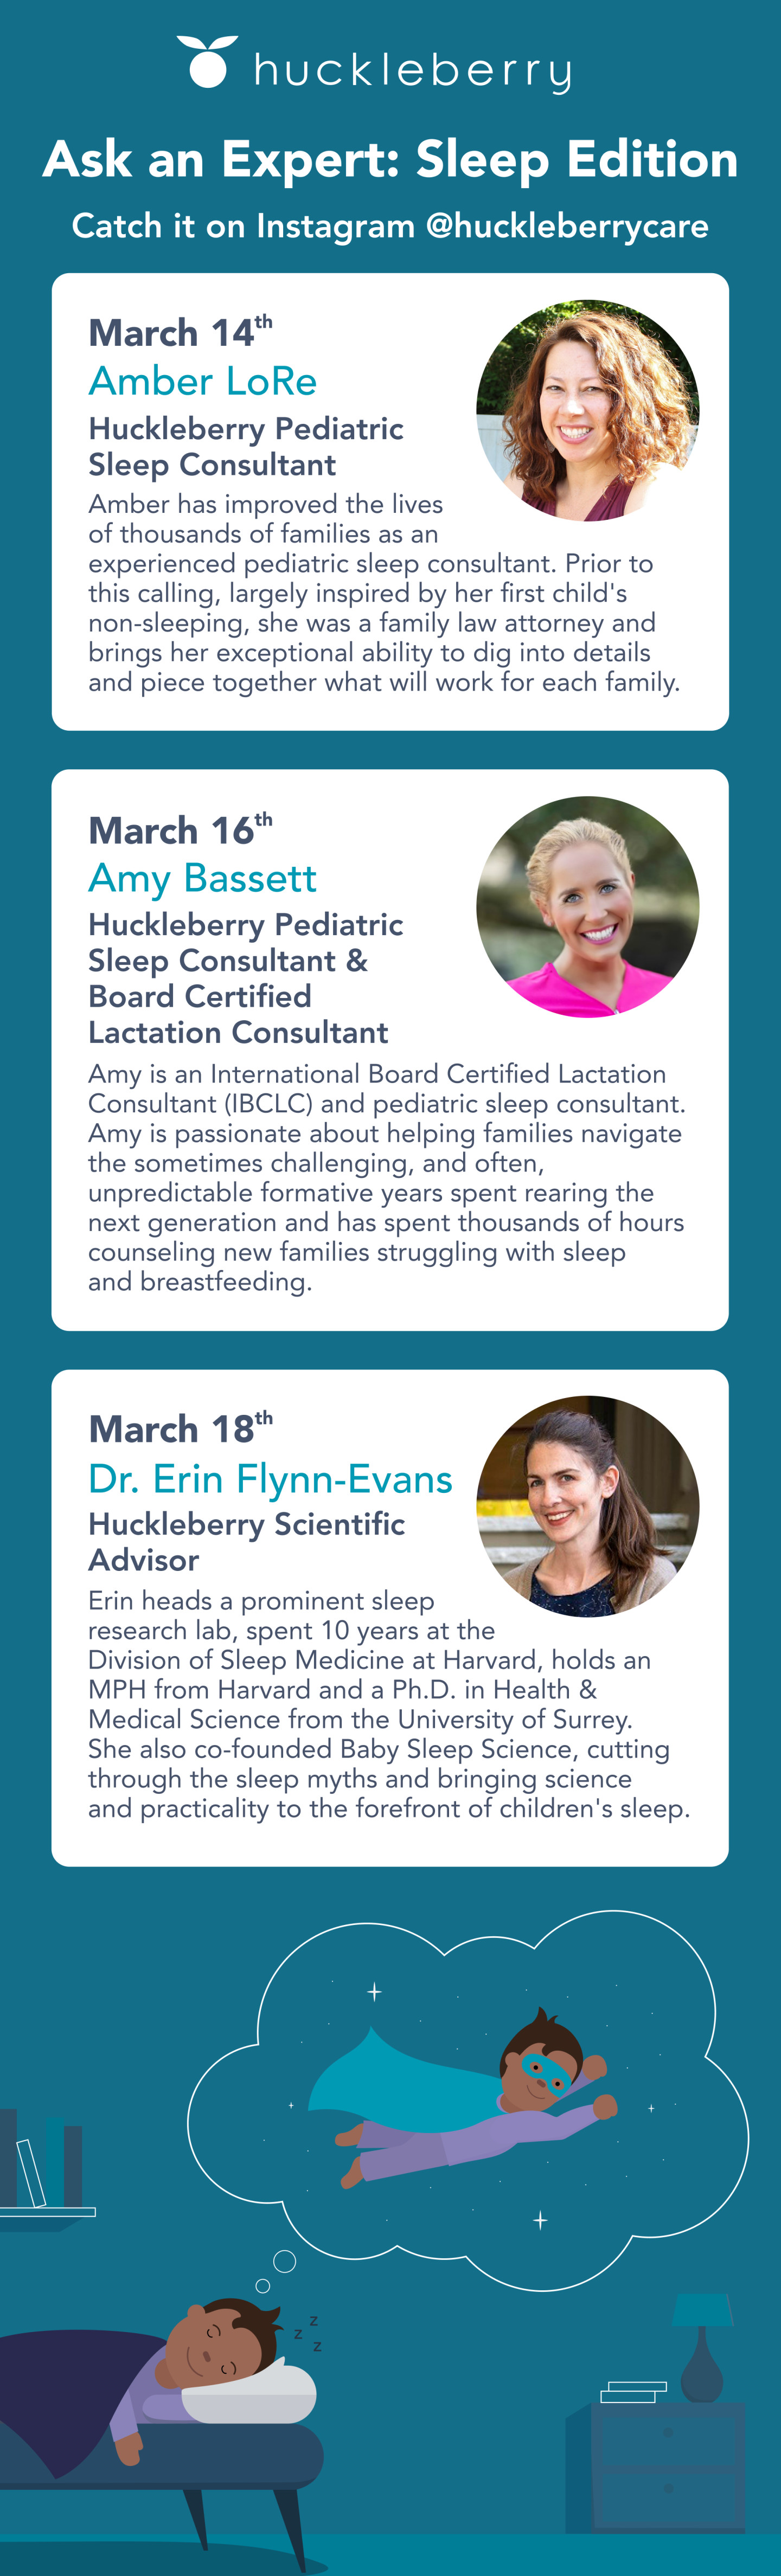 Ask An Expert: Sleep Edition with Huckleberry sleep experts.